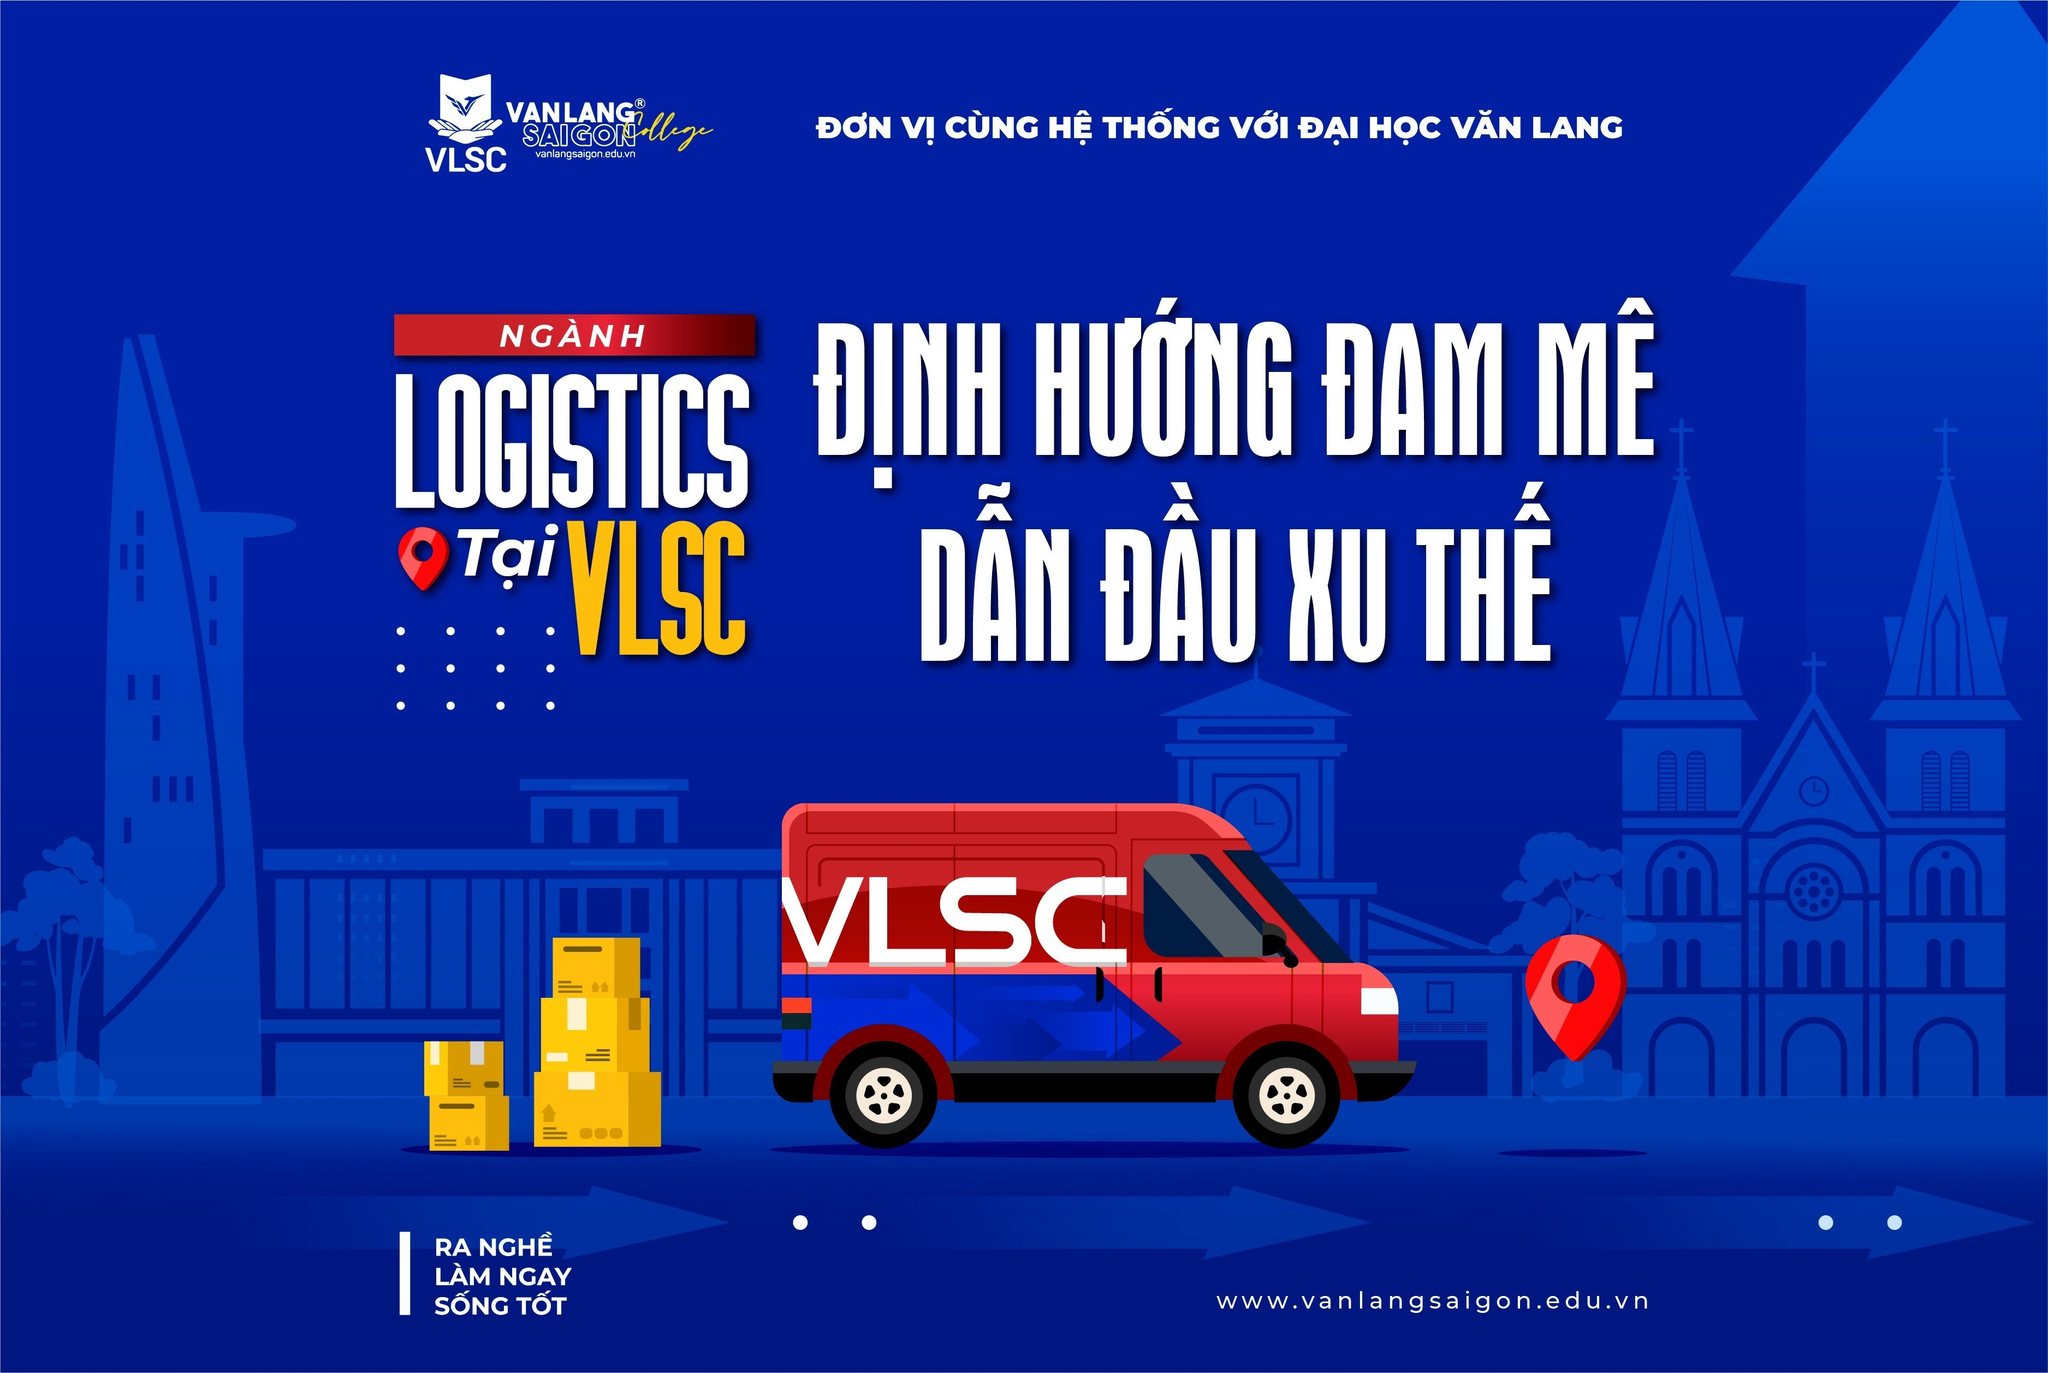 Ngành Logistics tại VLSC: Định hướng đam mê - Dẫn đầu xu thể